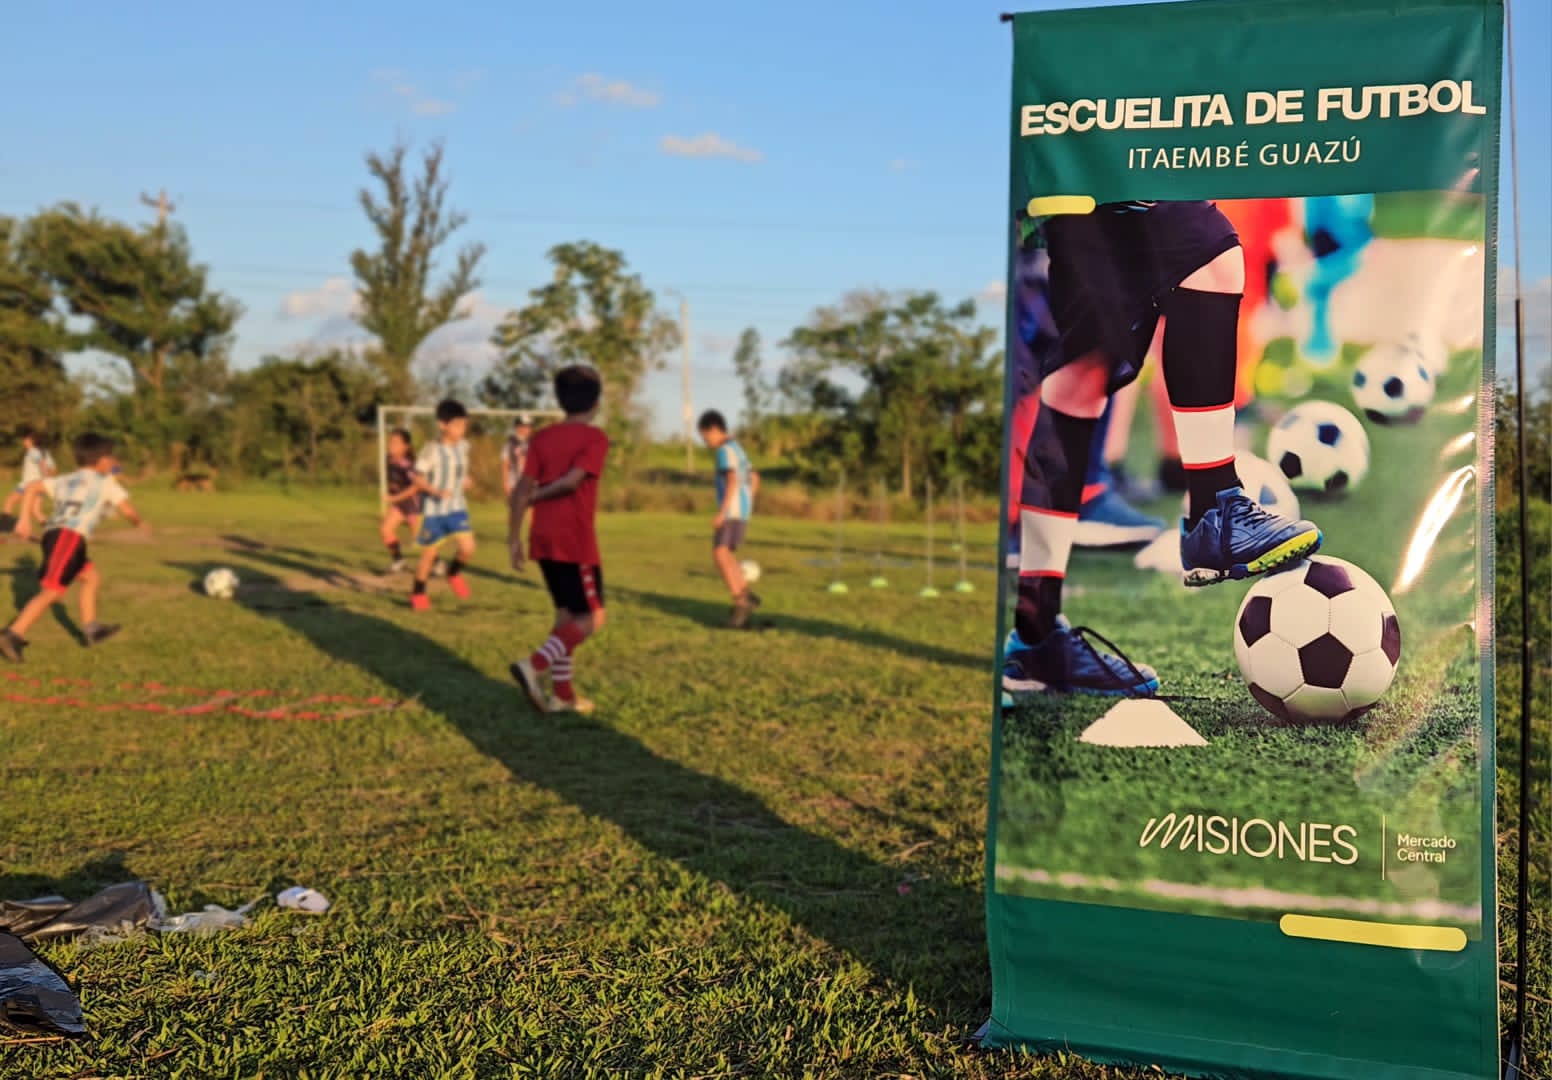 Comunidad de Itaembé Guazú destaca la puesta en funcionamiento de la Escuelita de Fútbol del Mercado Central imagen-9